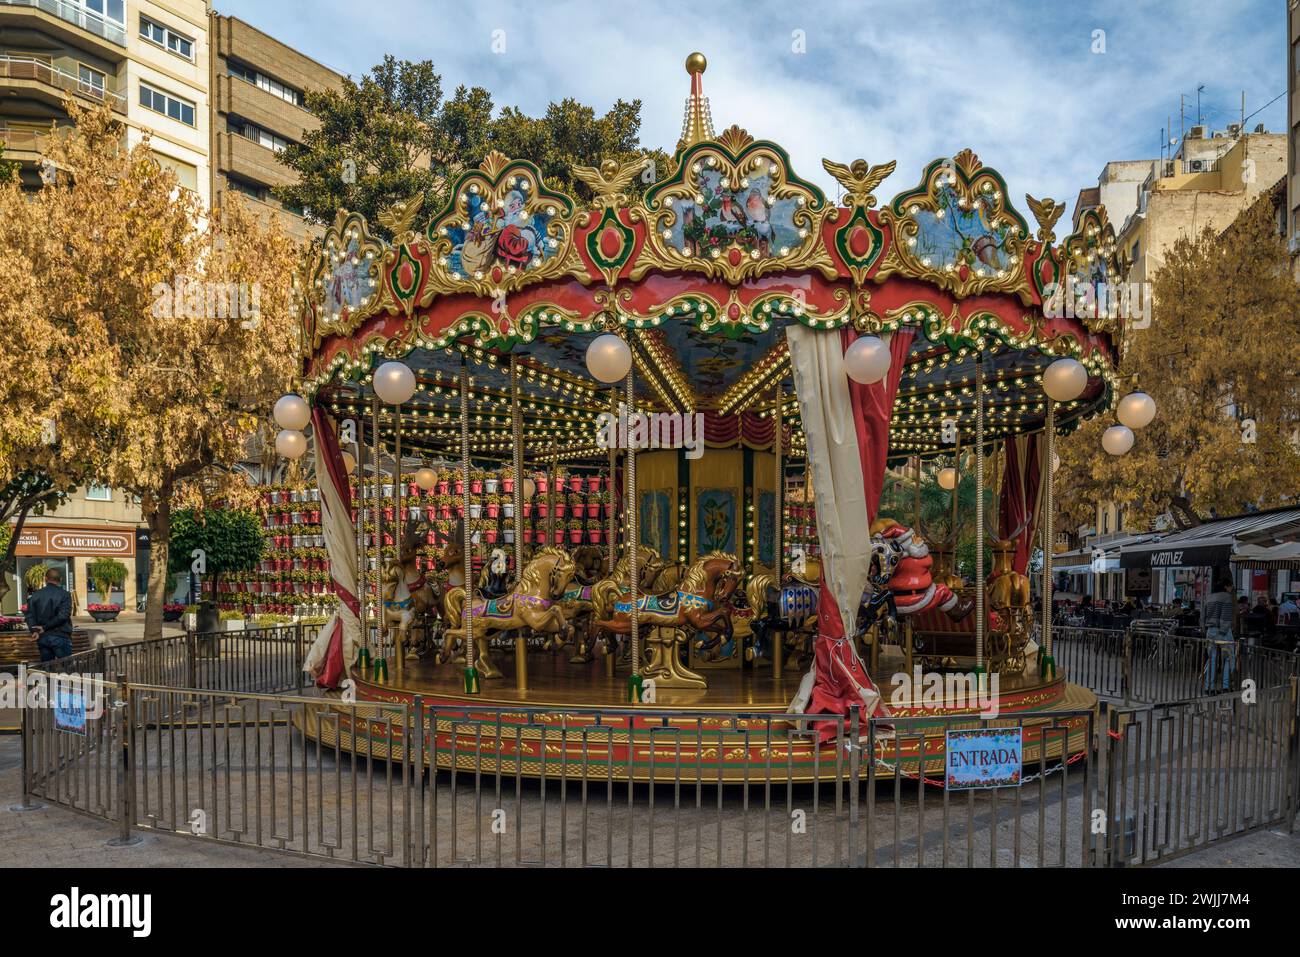 Giostra nella Plaza de Santo Domingo per la festa e il divertimento dei bambini a Natale nel centro storico della città di Murcia, in Spagna Foto Stock